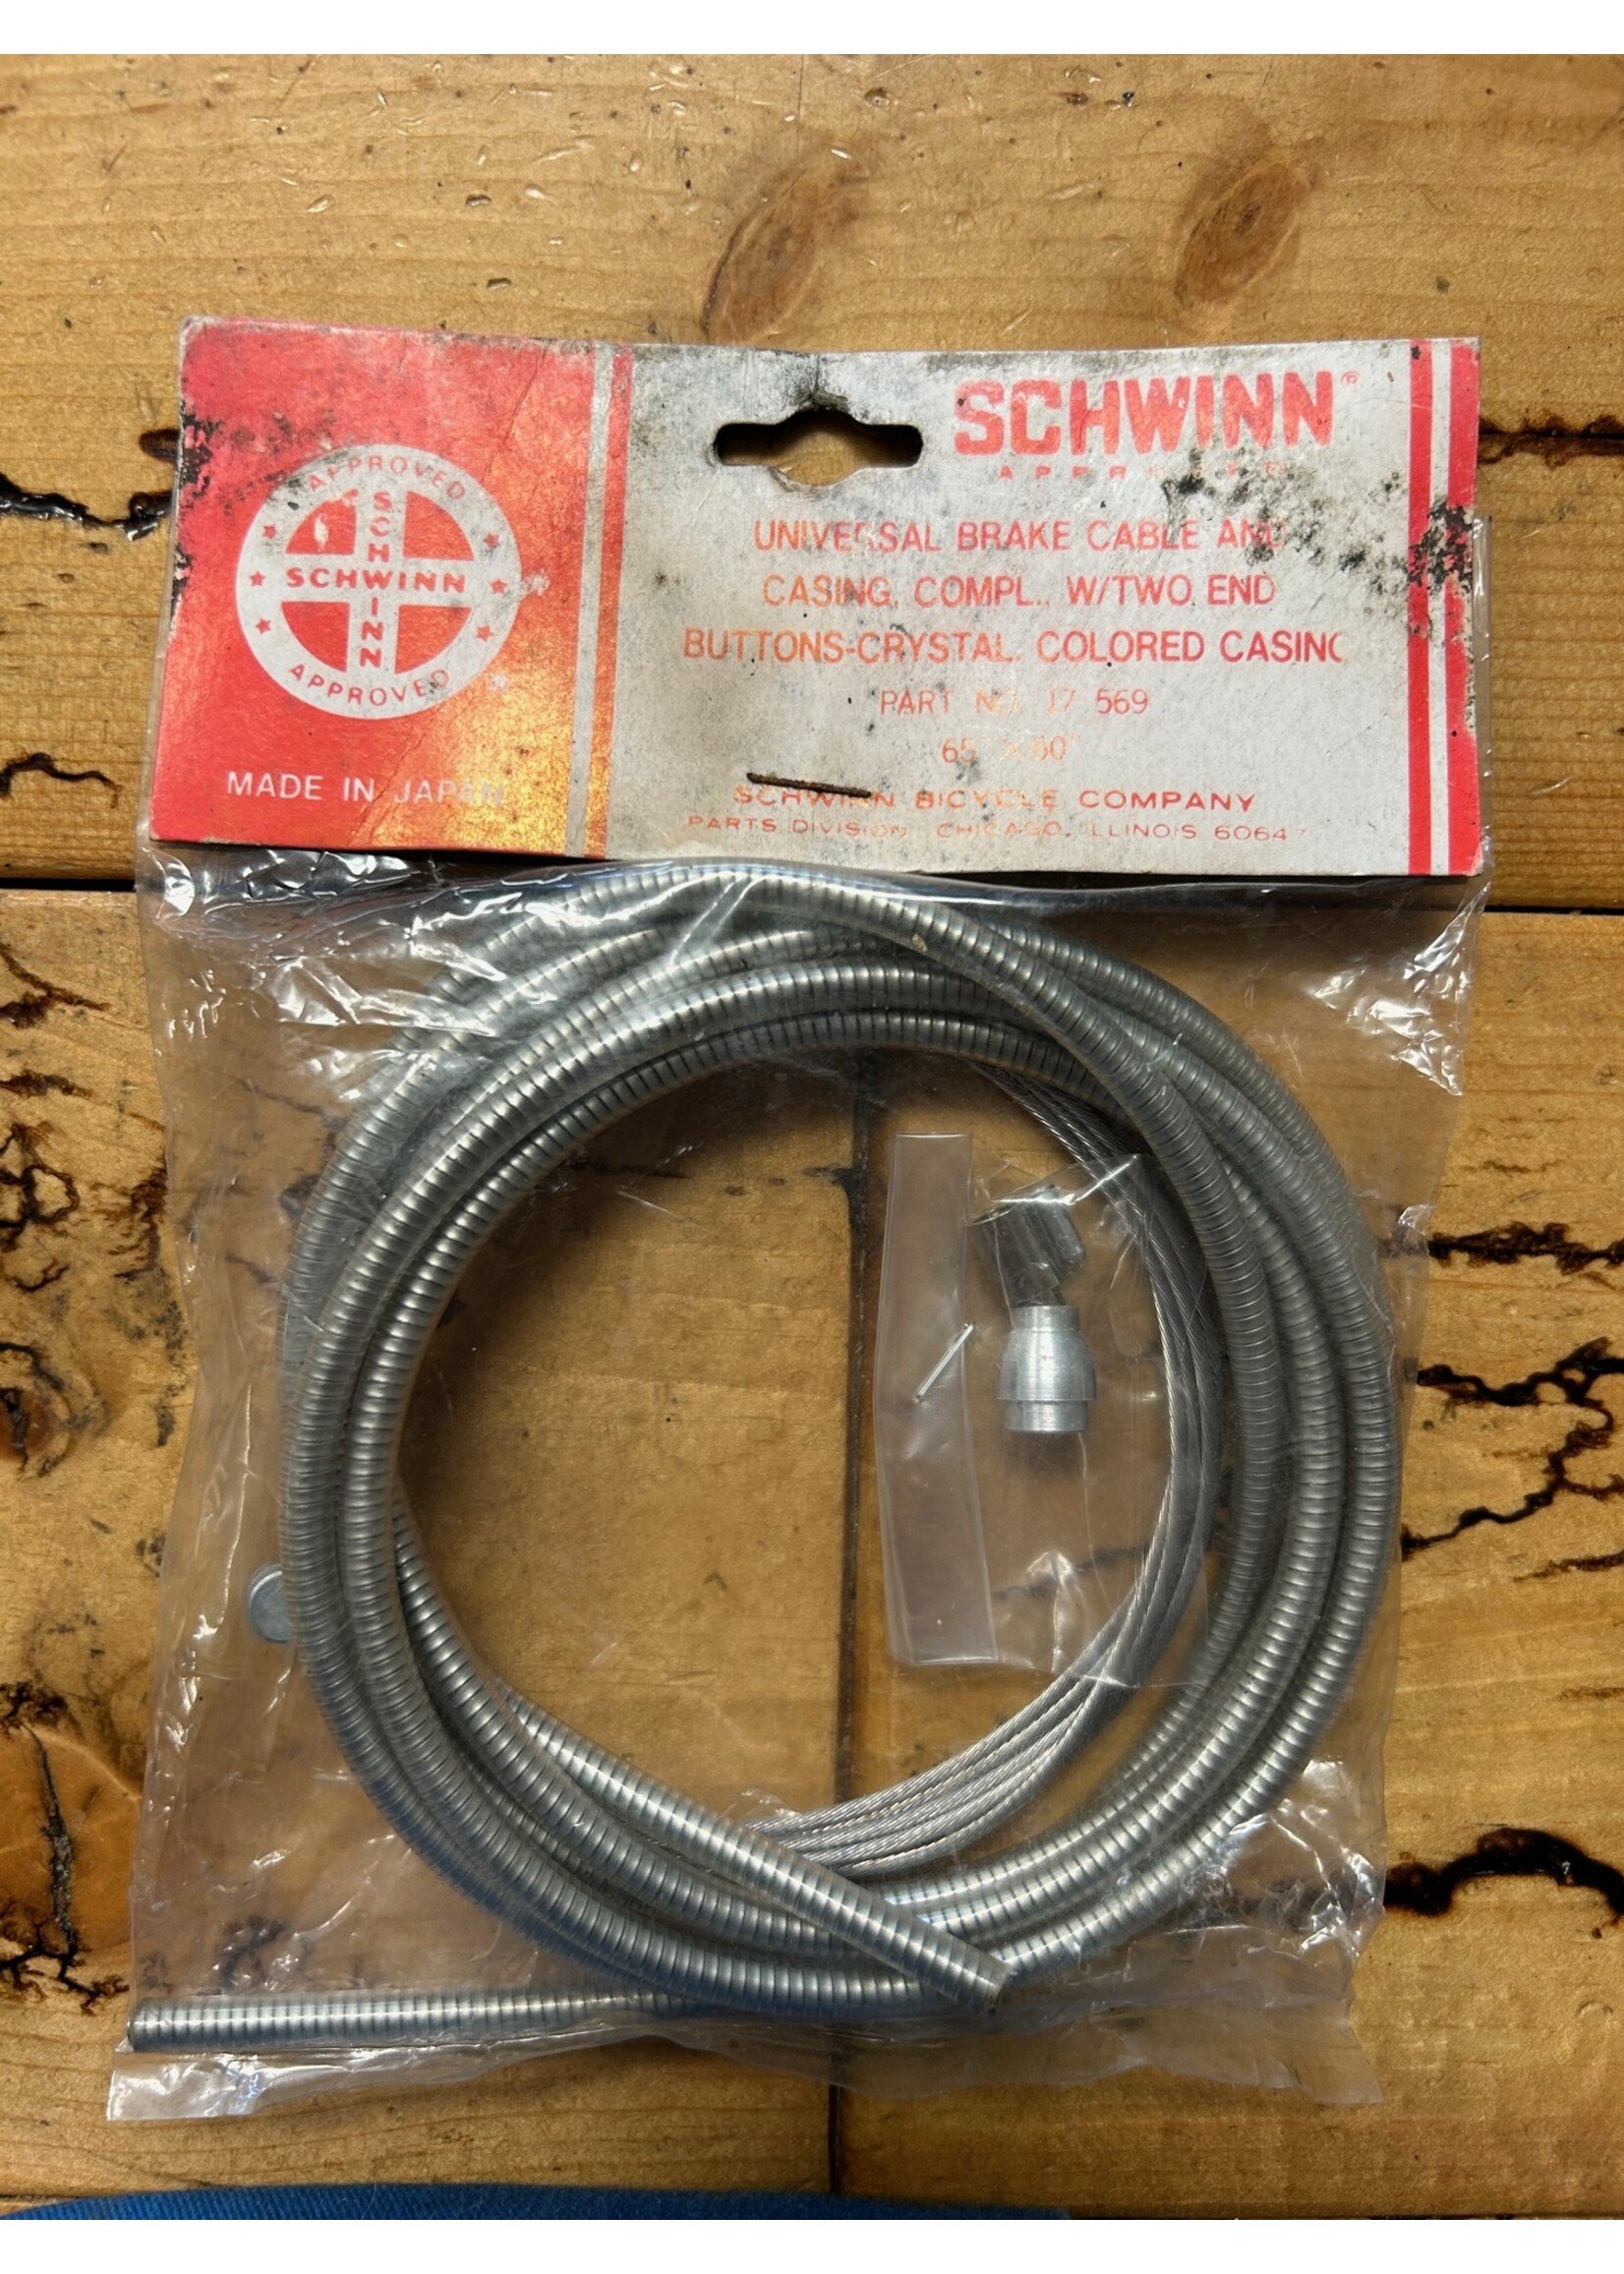 Schwinn Schwinn Universal Brake Cable and Casing Part No 17569